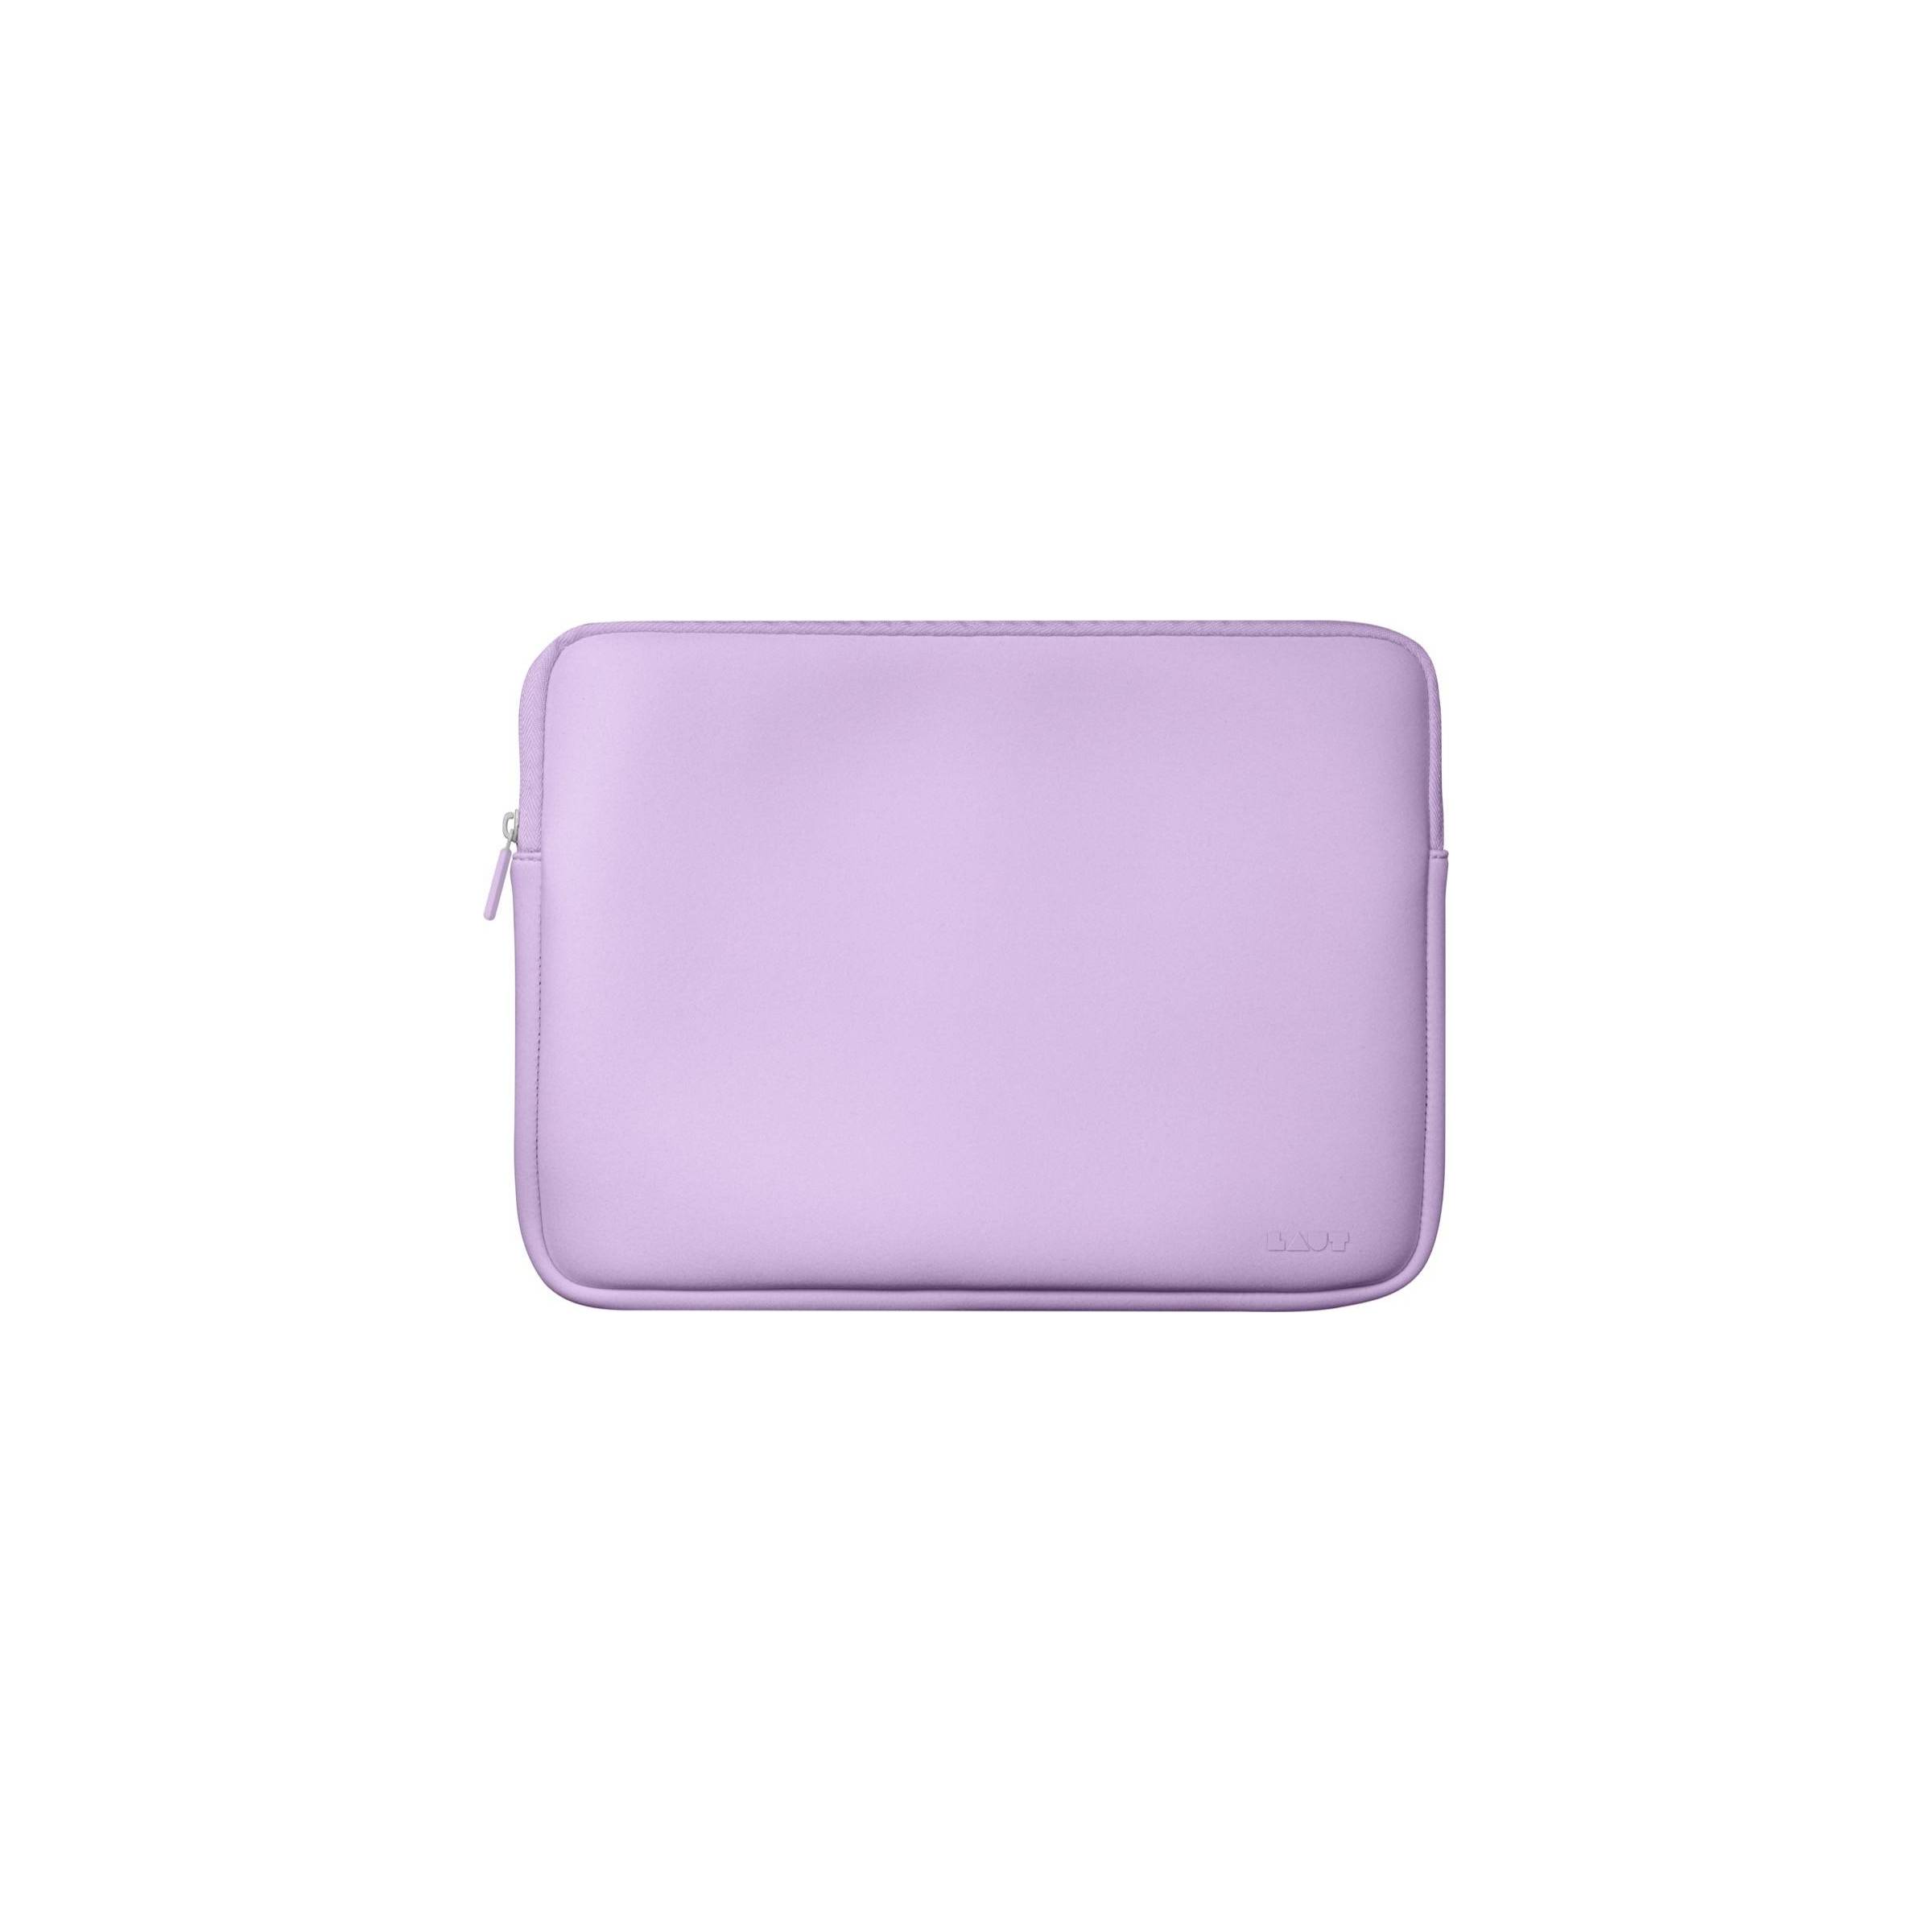 Bilde av Huex Pastels 13" Macbook Pro / Air Sleeve - Violet